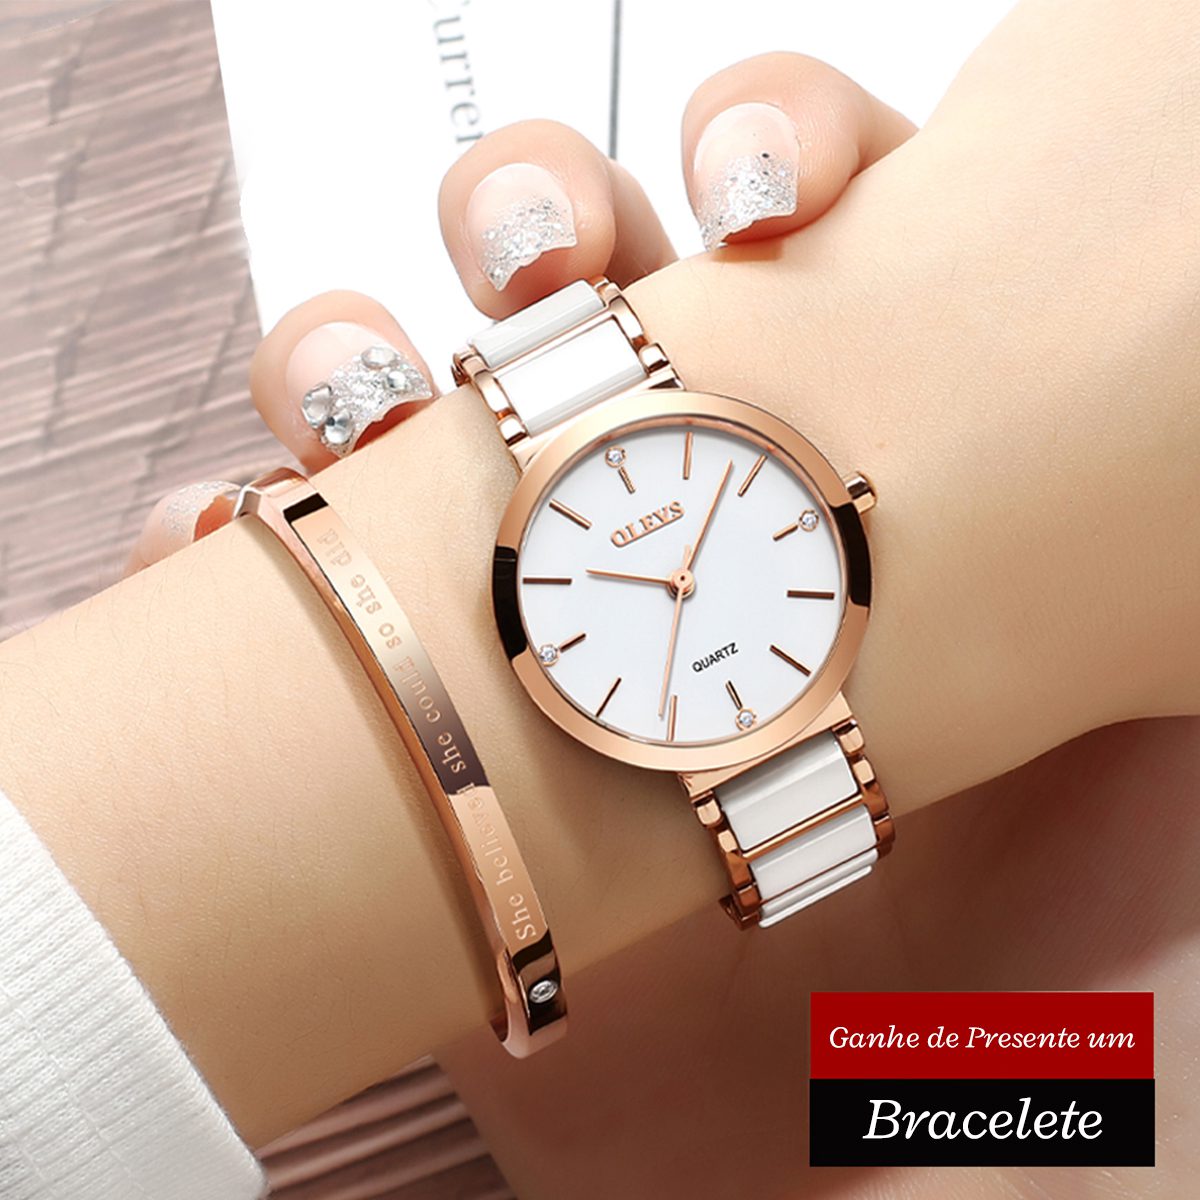 Relógio + Bracelete, Perfeição em Cada Detalhe para Mulheres Sofisticadas, relógio off white, relógio com pulseira em cerâmica